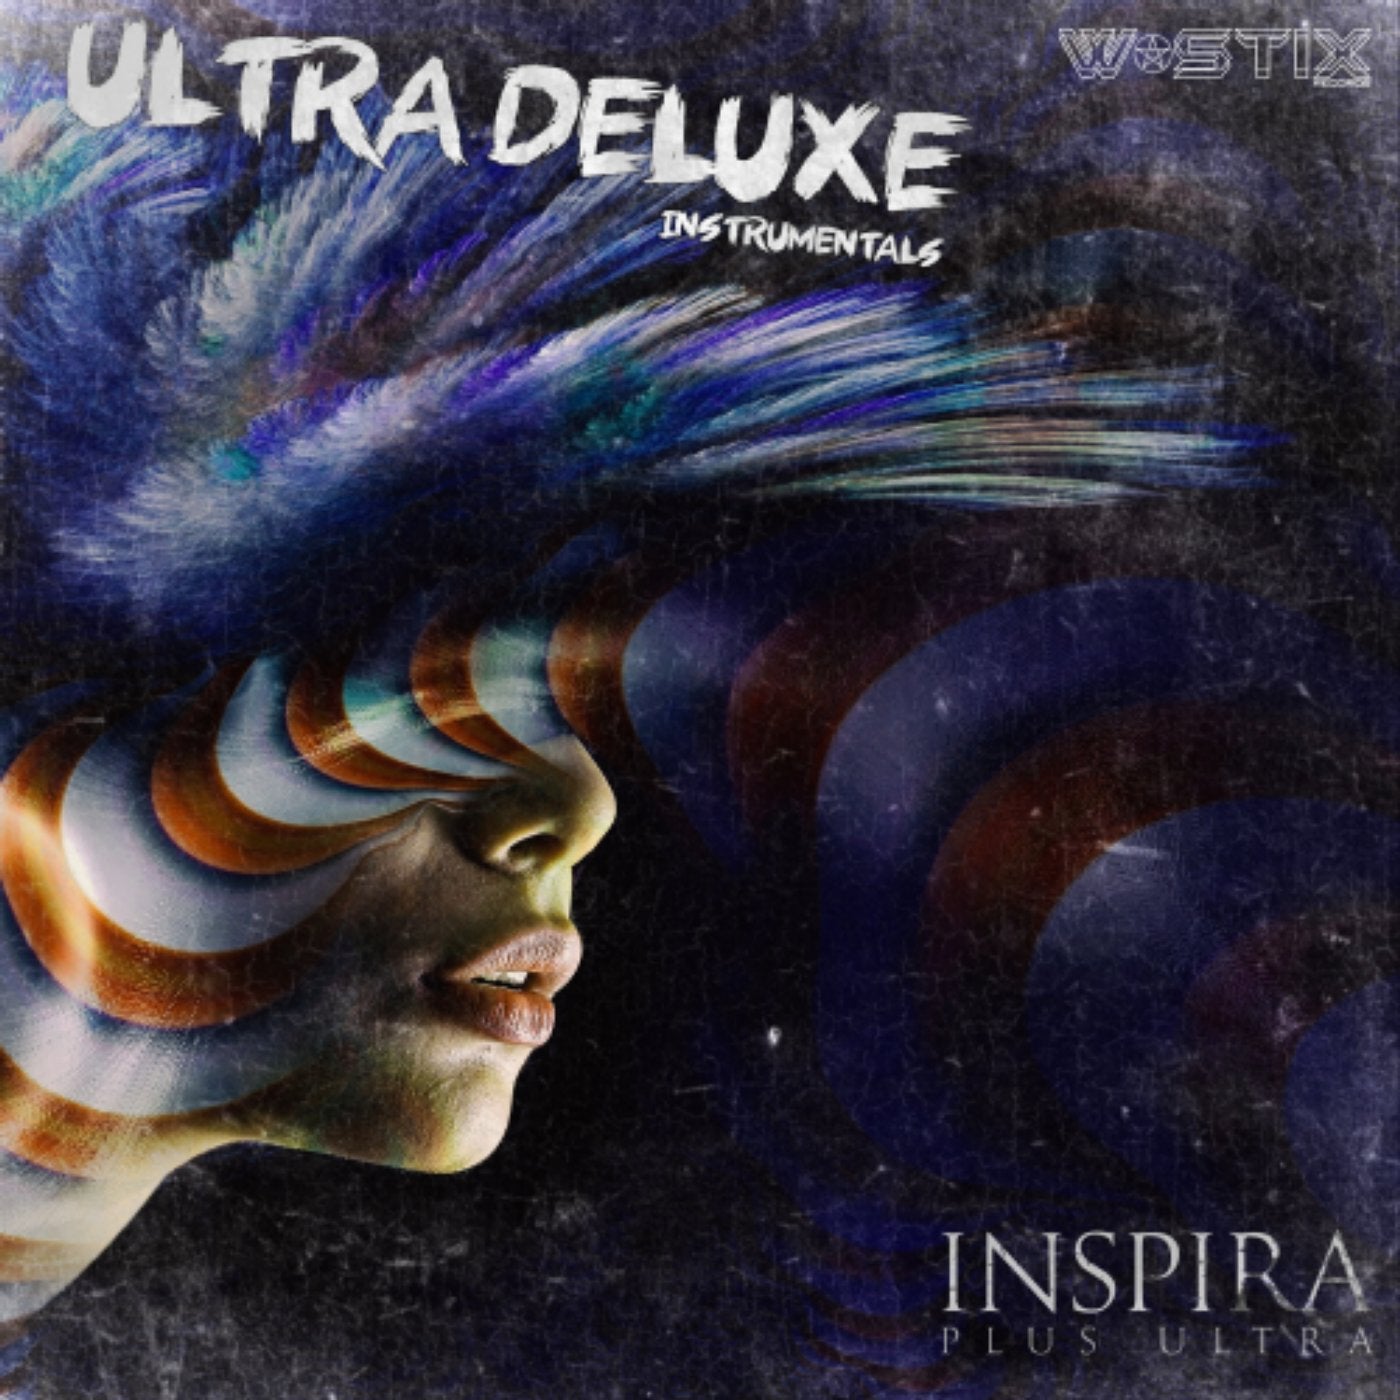 Plus Ultra (Deluxe Instrumentals)